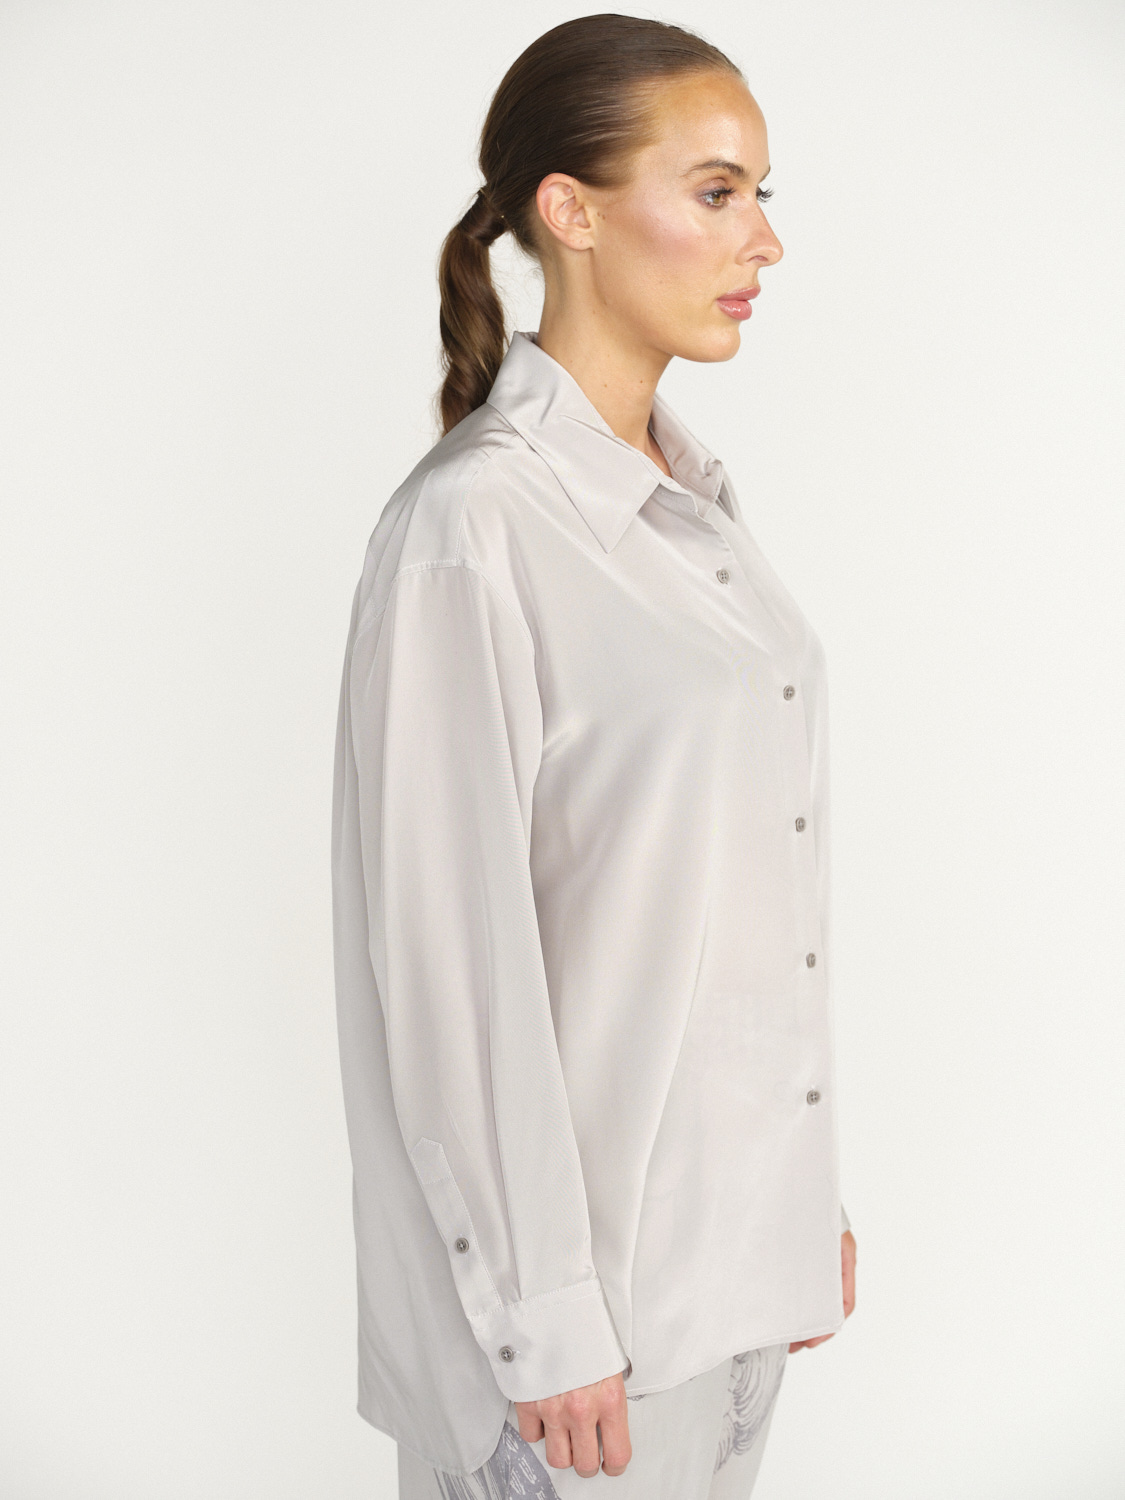 Nili Lotan Julien Camisa de Seda - Blusa de seda holgada gris M